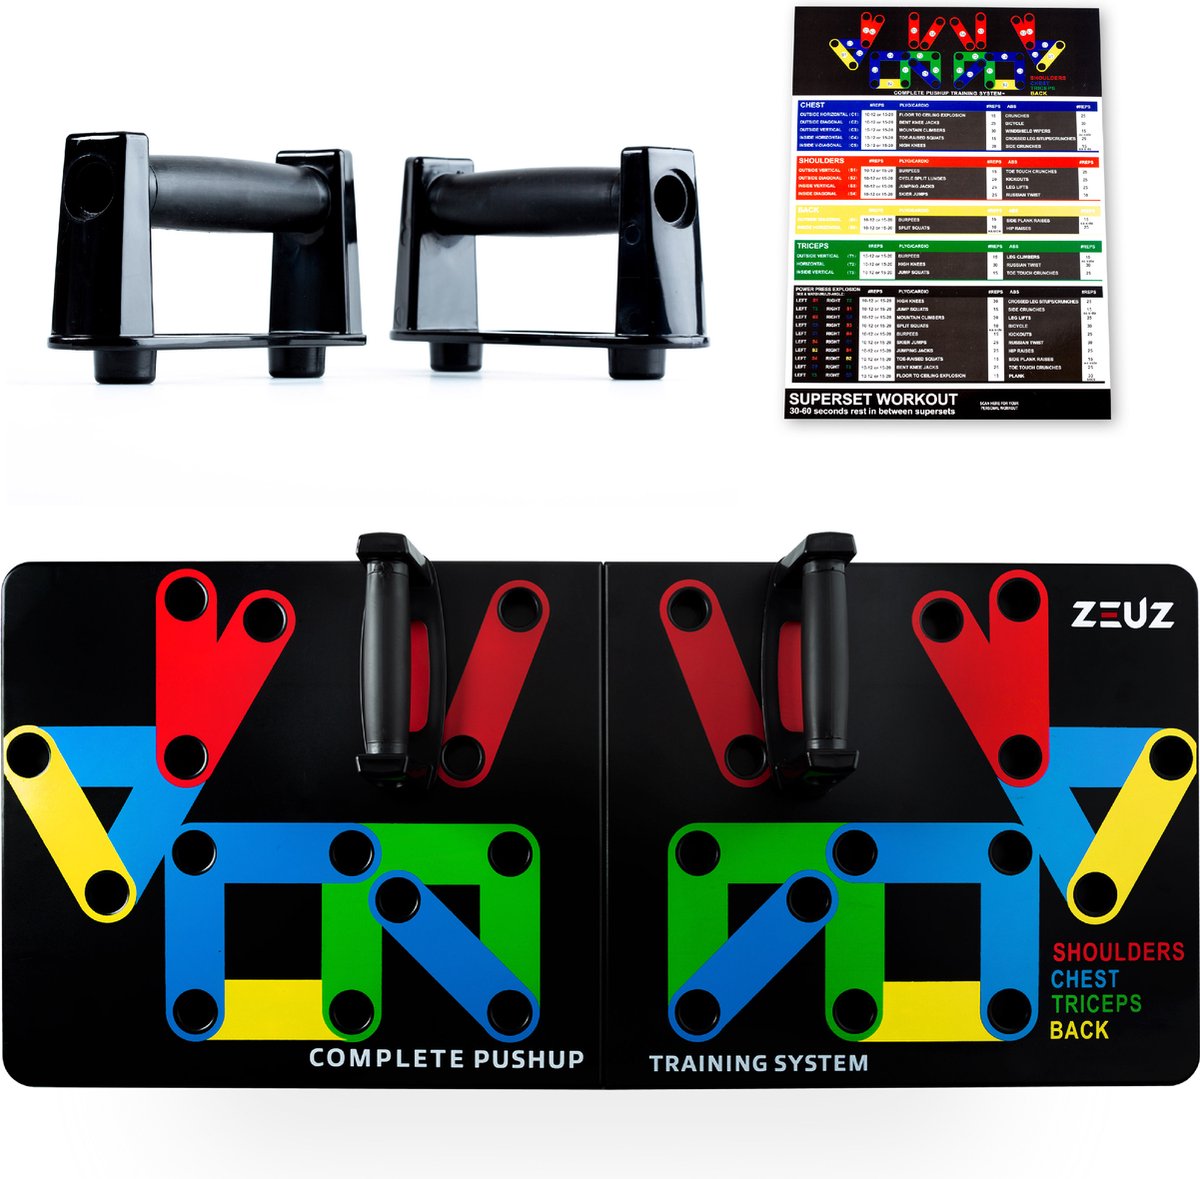 ZEUZ Professionele 24+ Opties Premium Push up bord voor Thuis Trainen – Rug, Biceps, Triceps, borst & Schouders - ZEUZ